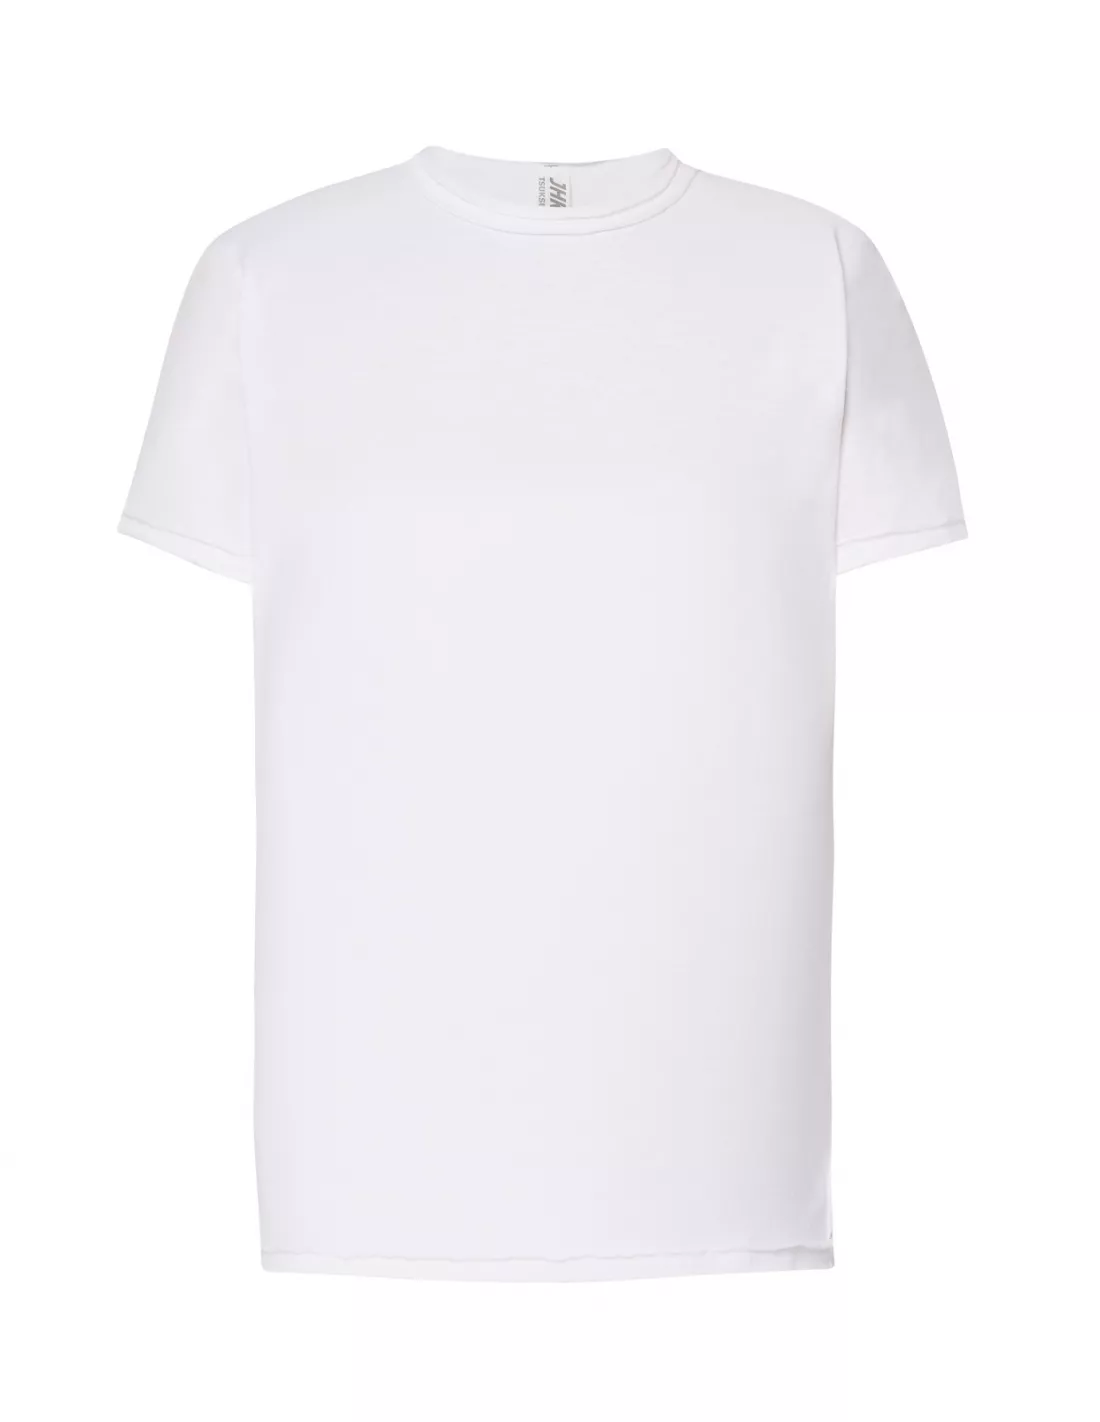 Camiseta blanca Kid Urban Sea